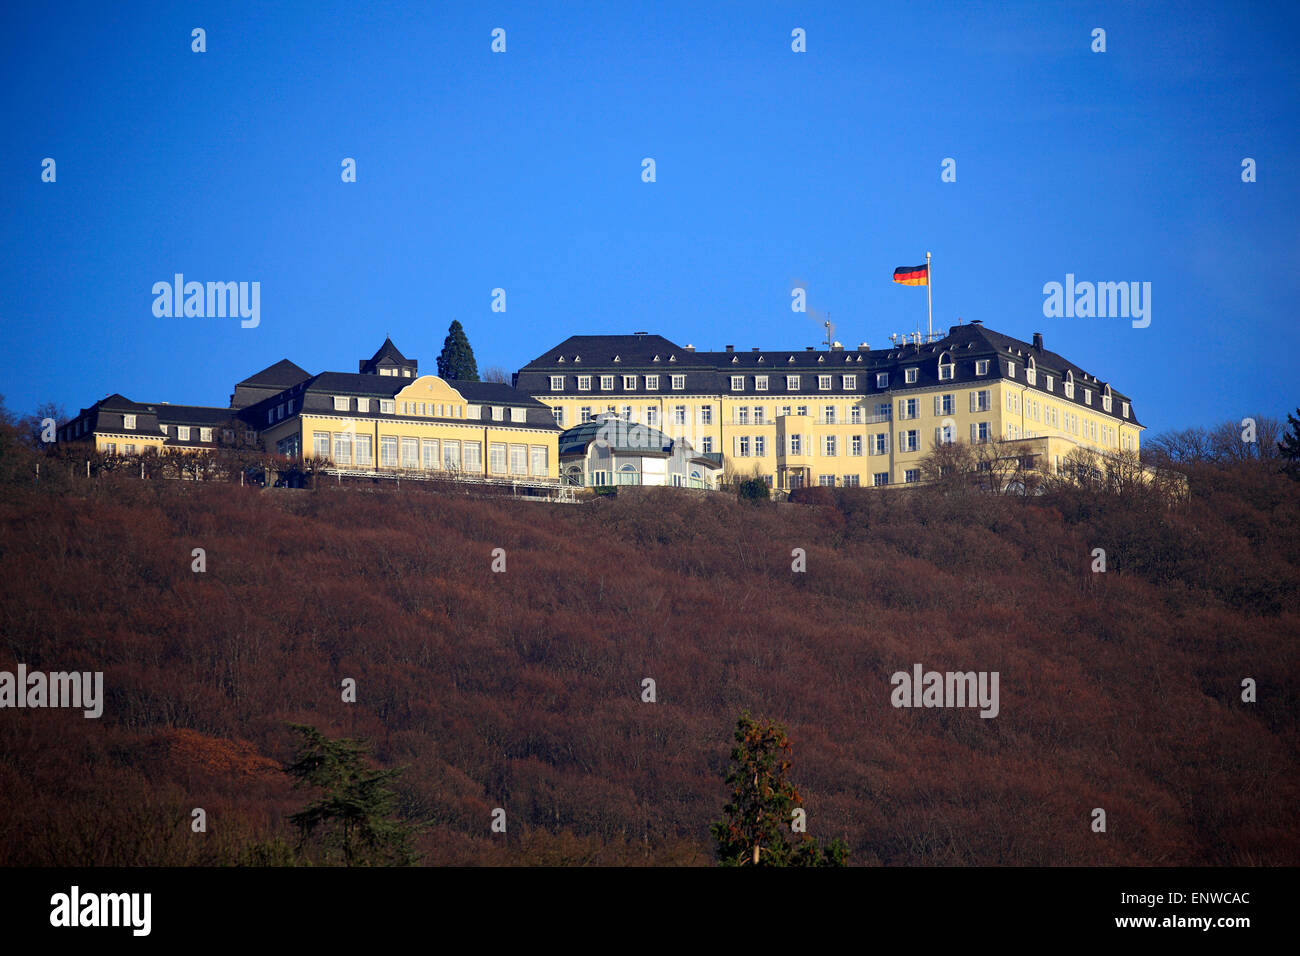 Im di Petersberg Siebenbirge mit Steigenberger Grand Hotel in Koenigswinter am Rhein, Gaestehaus der Bundesregierung Foto Stock